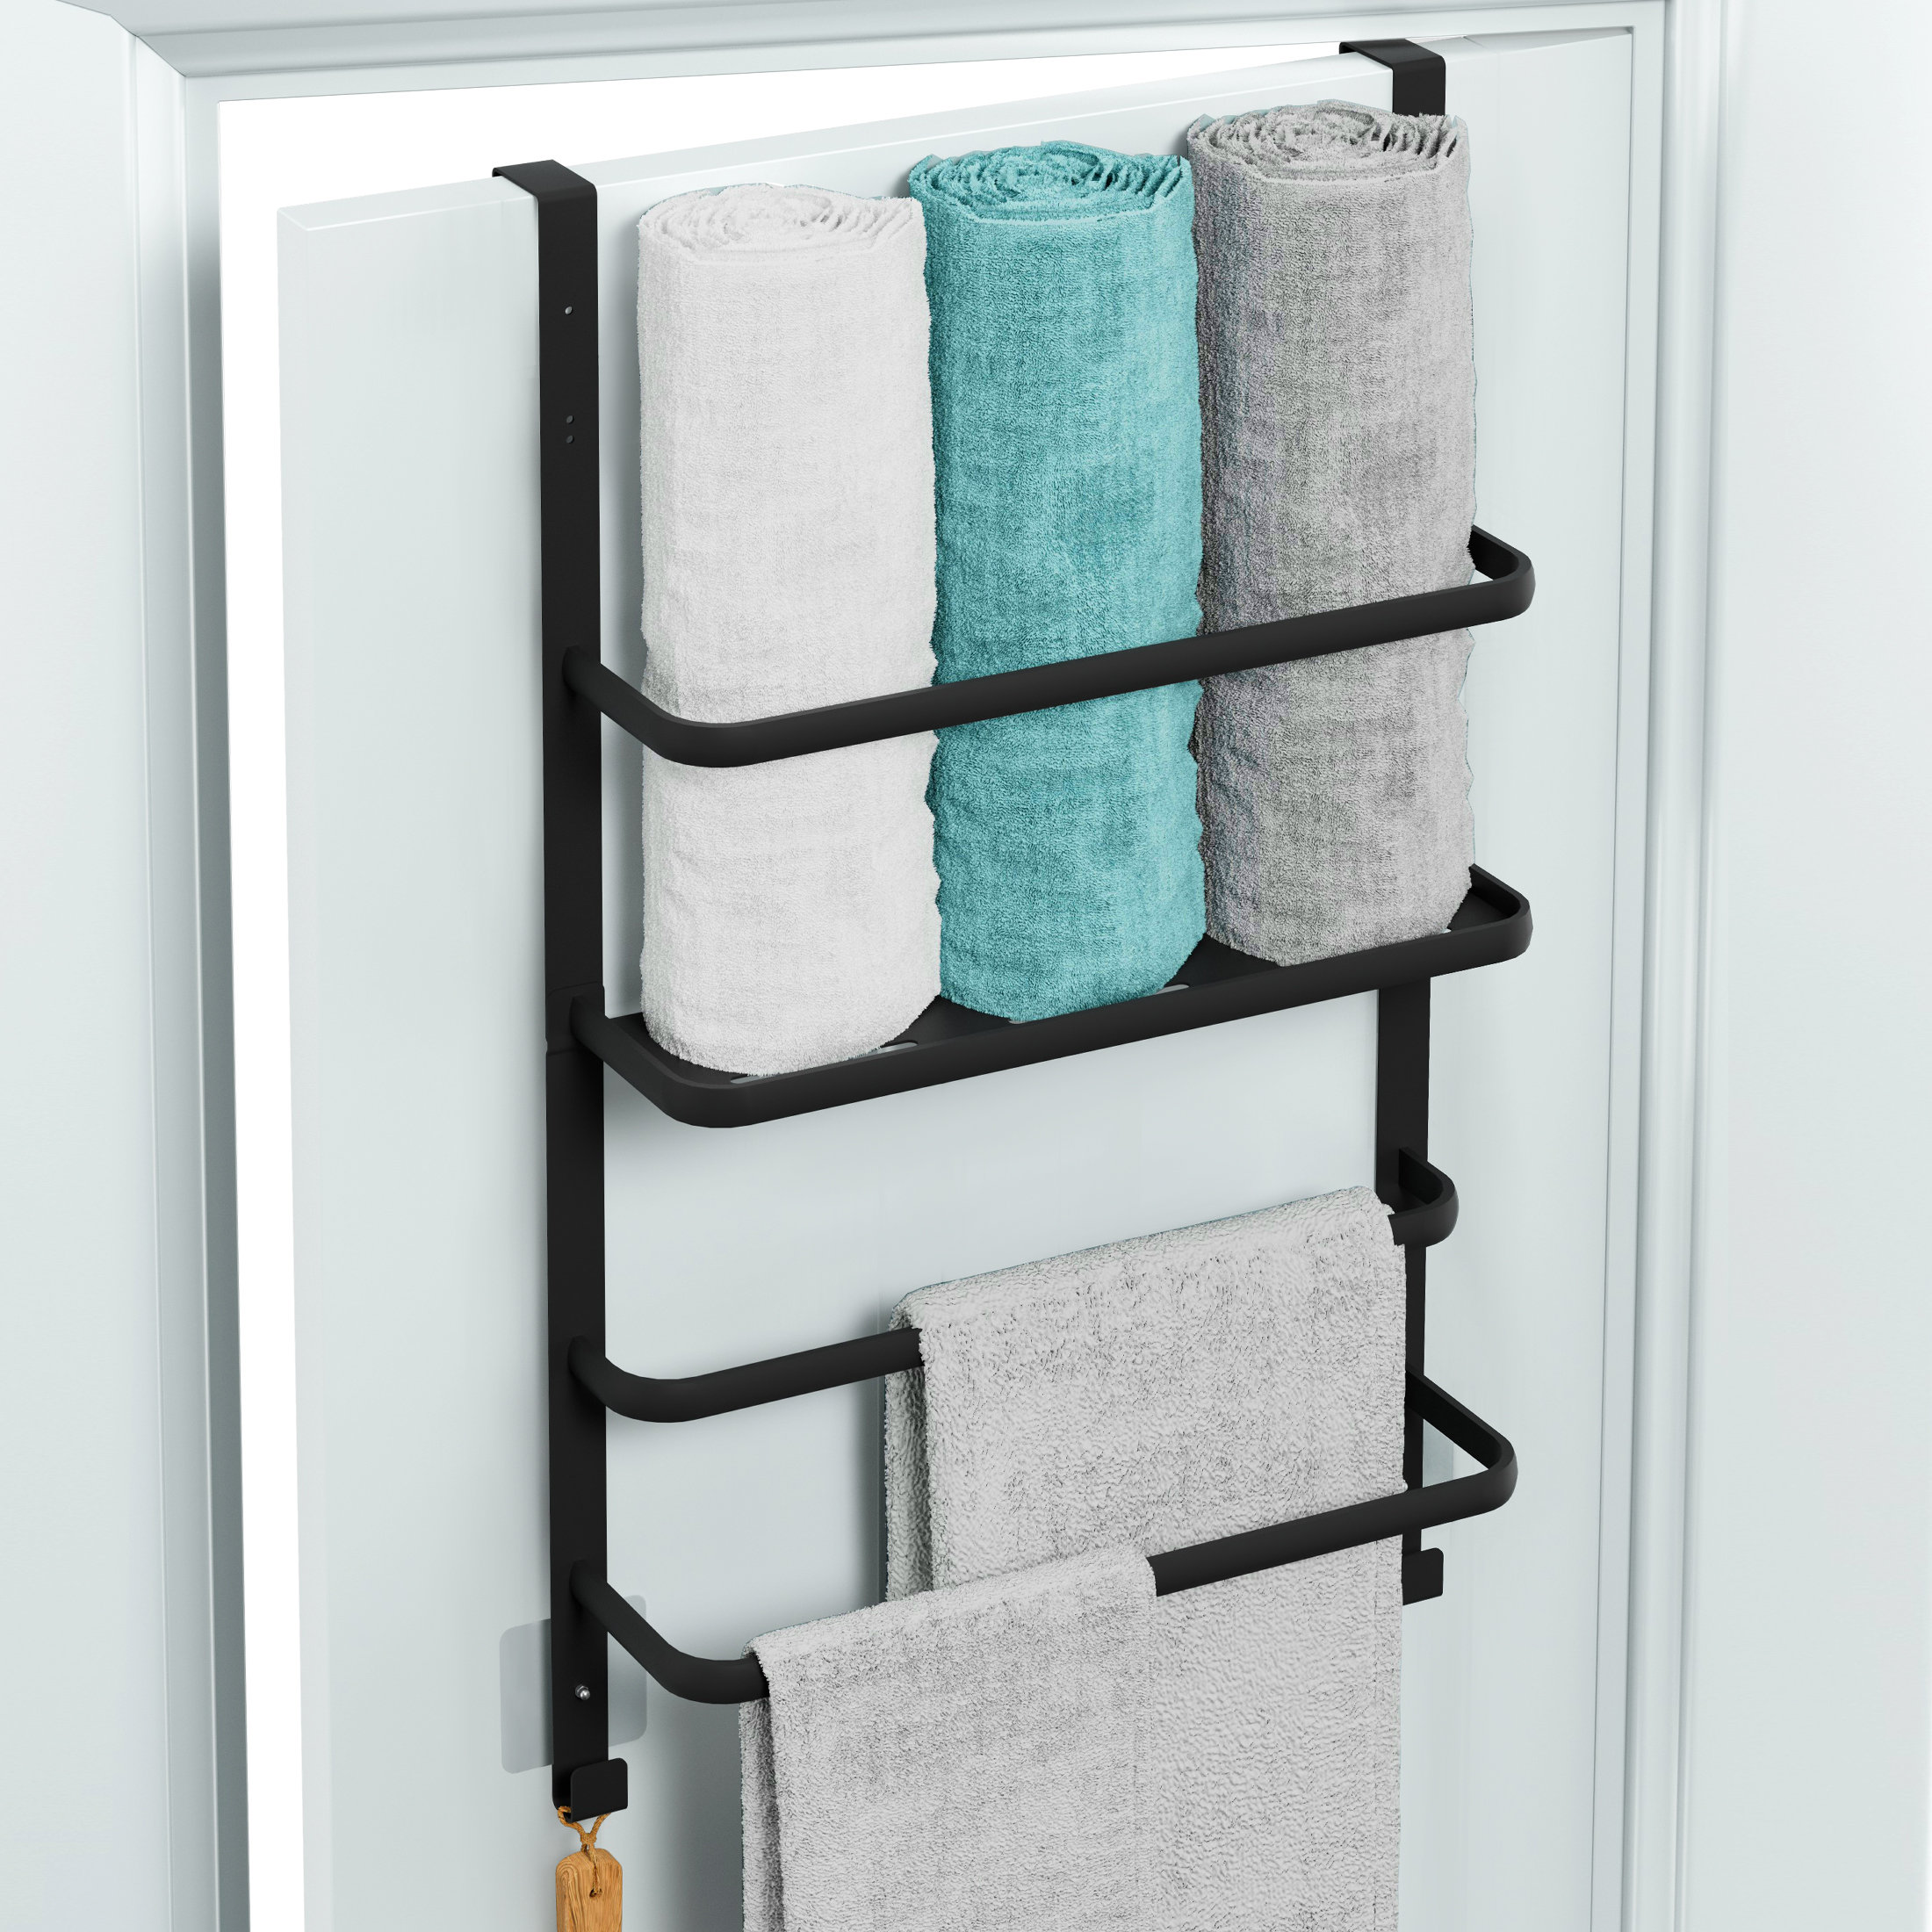 5 Tier Over The Door Towel Rack Bathroom Behind Door Towel Holder with Hooks, Size: 53.35, Black